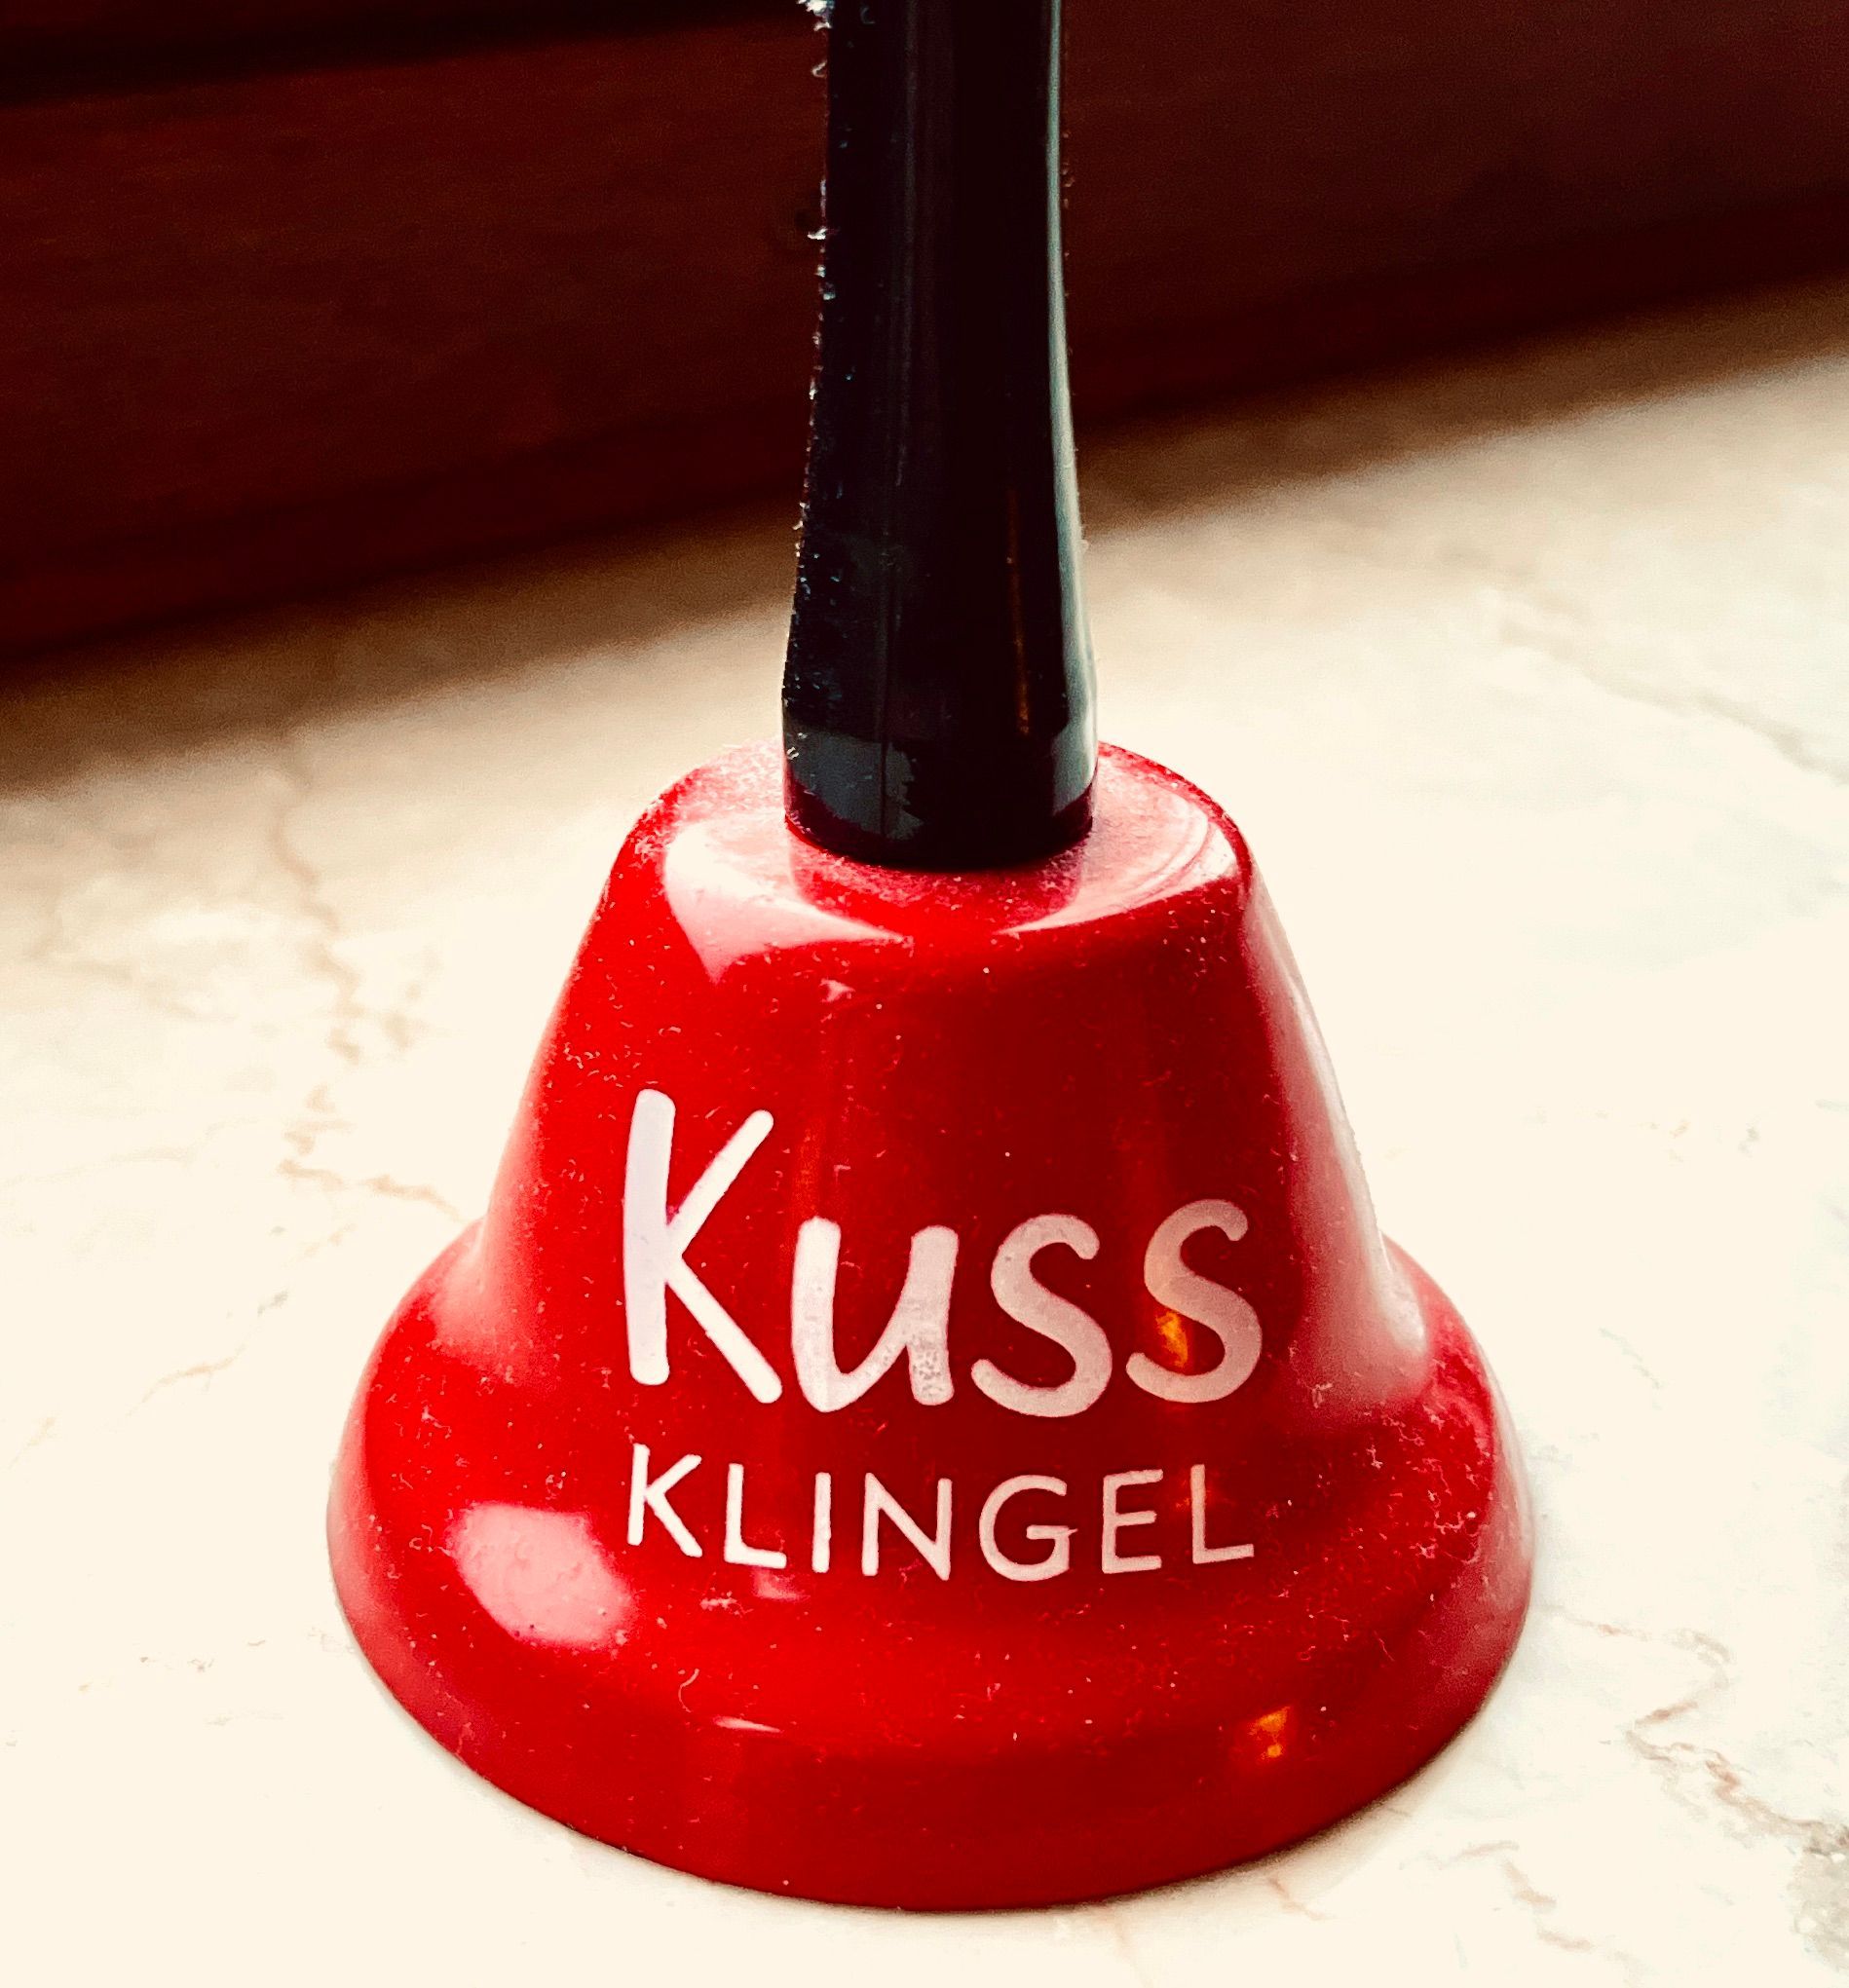 Kussklingel bei Paarcoach Kirsten Pape in Köln, Paartherapie und Paarcoaching, auch online